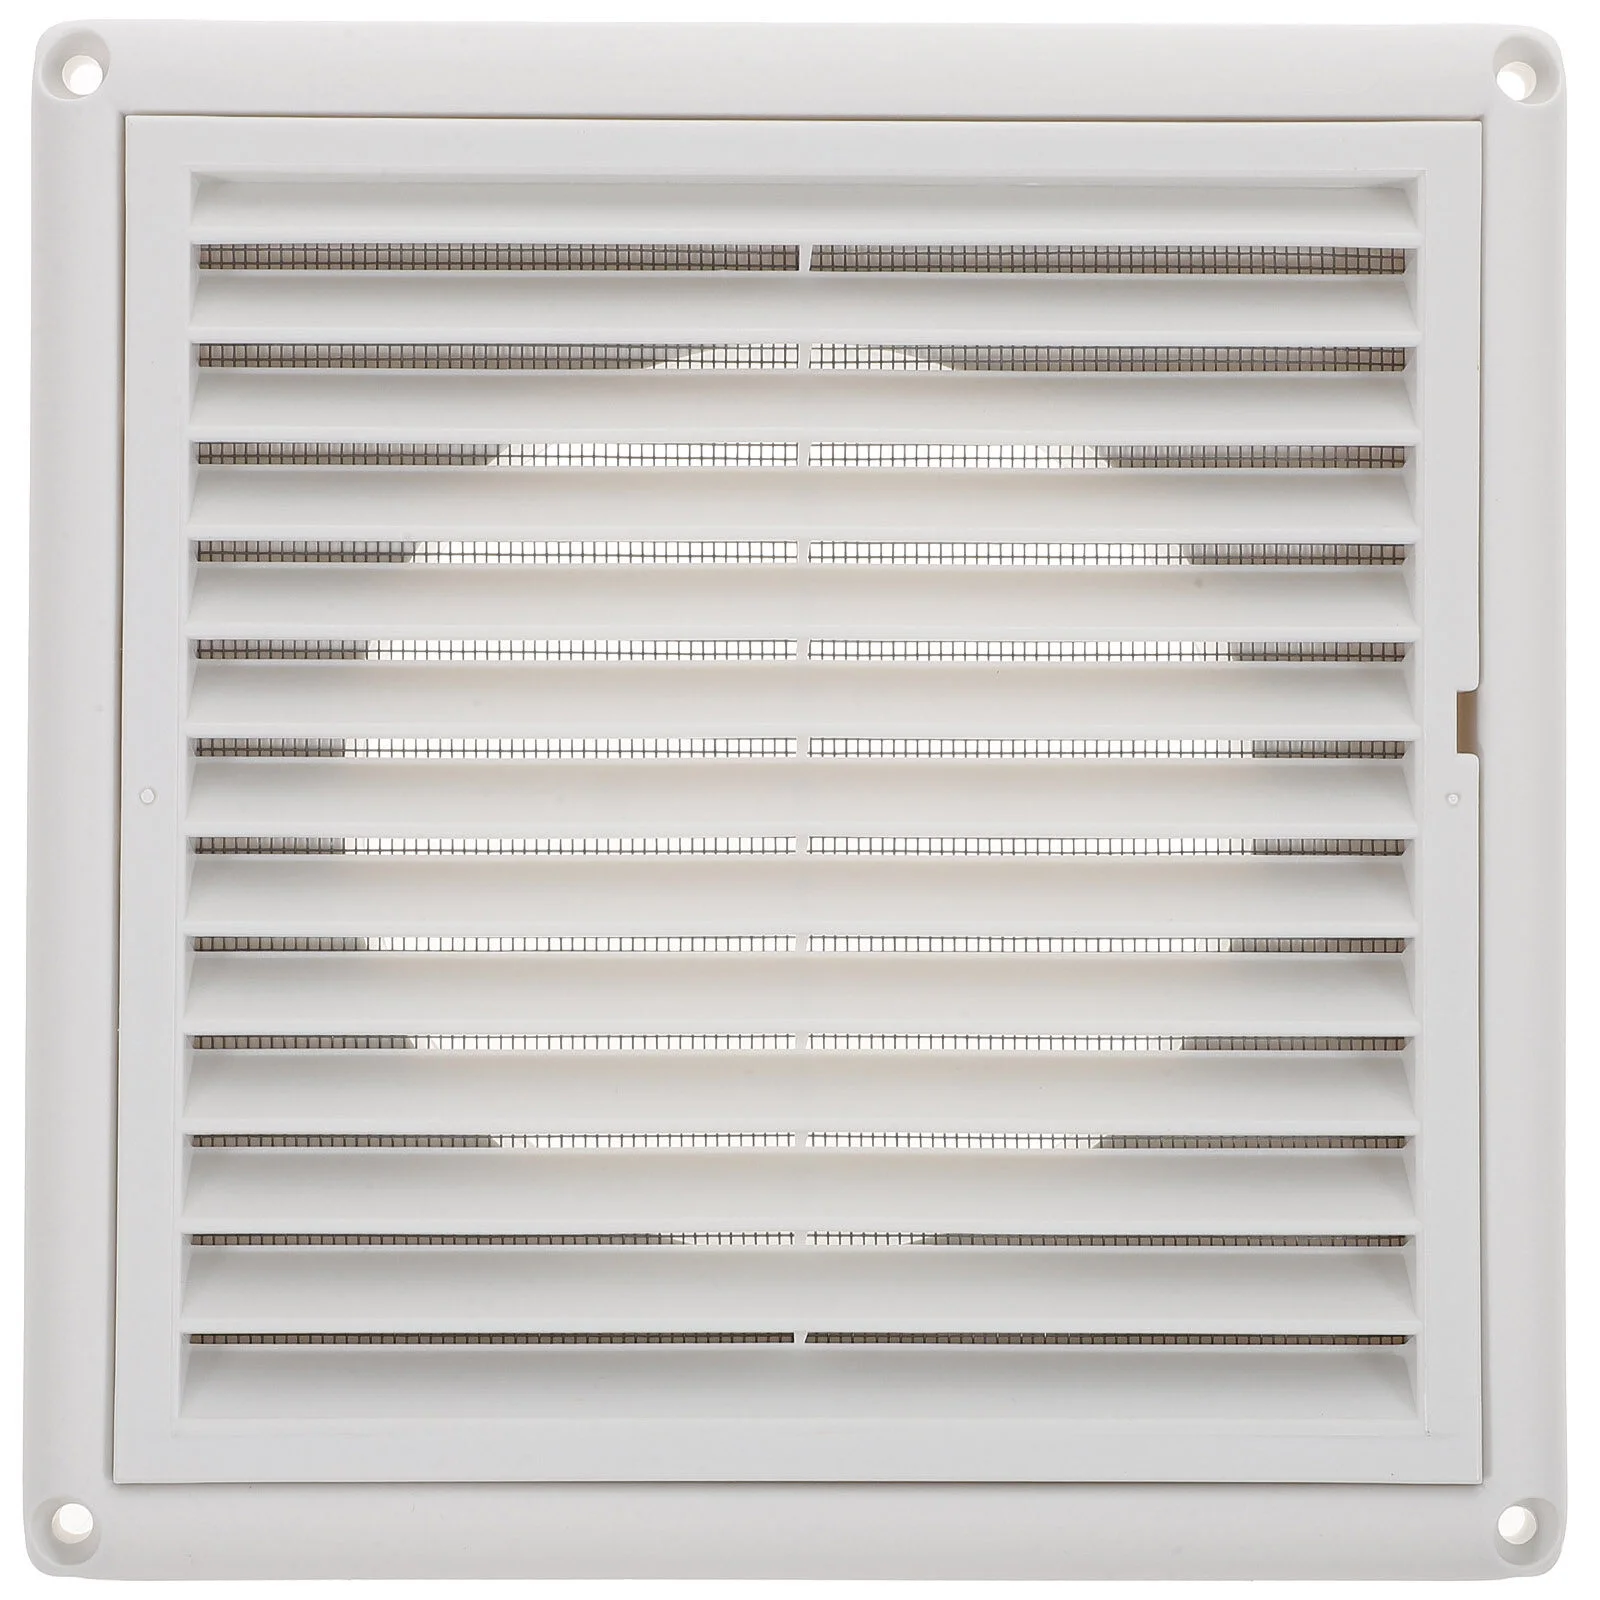 

Ceiling Grid Air Regulator Vents Furnace Cover Covers Floor Deflector Deflectors Home UV